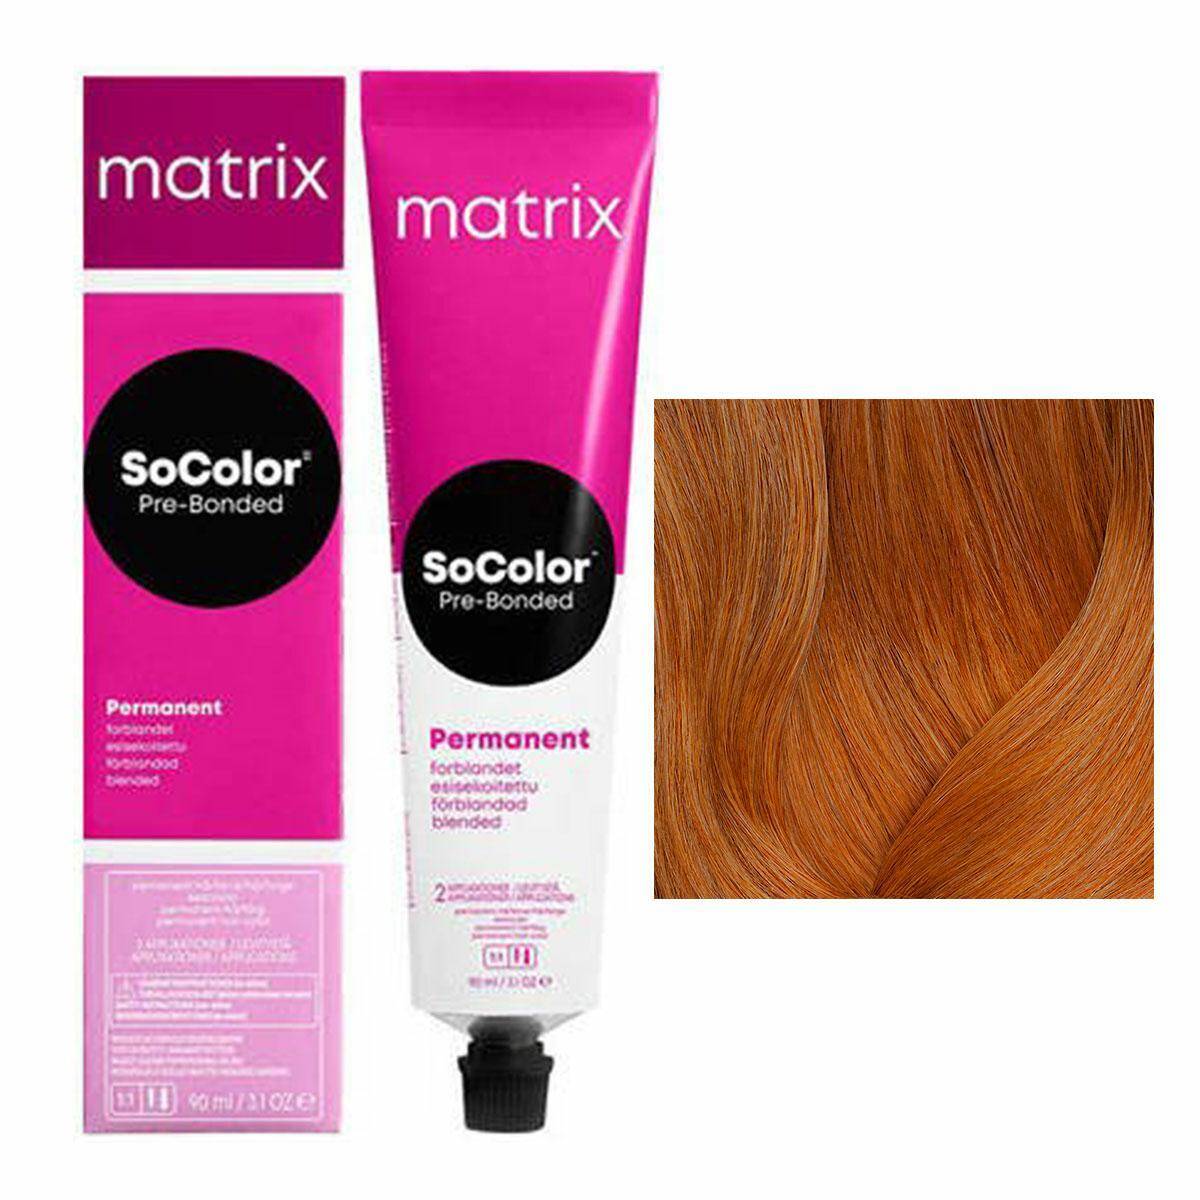 Matrix SoColor Pre-Bonded Farba do włosów - 8C Miedziany jasny blond, trwała koloryzacja 90ml